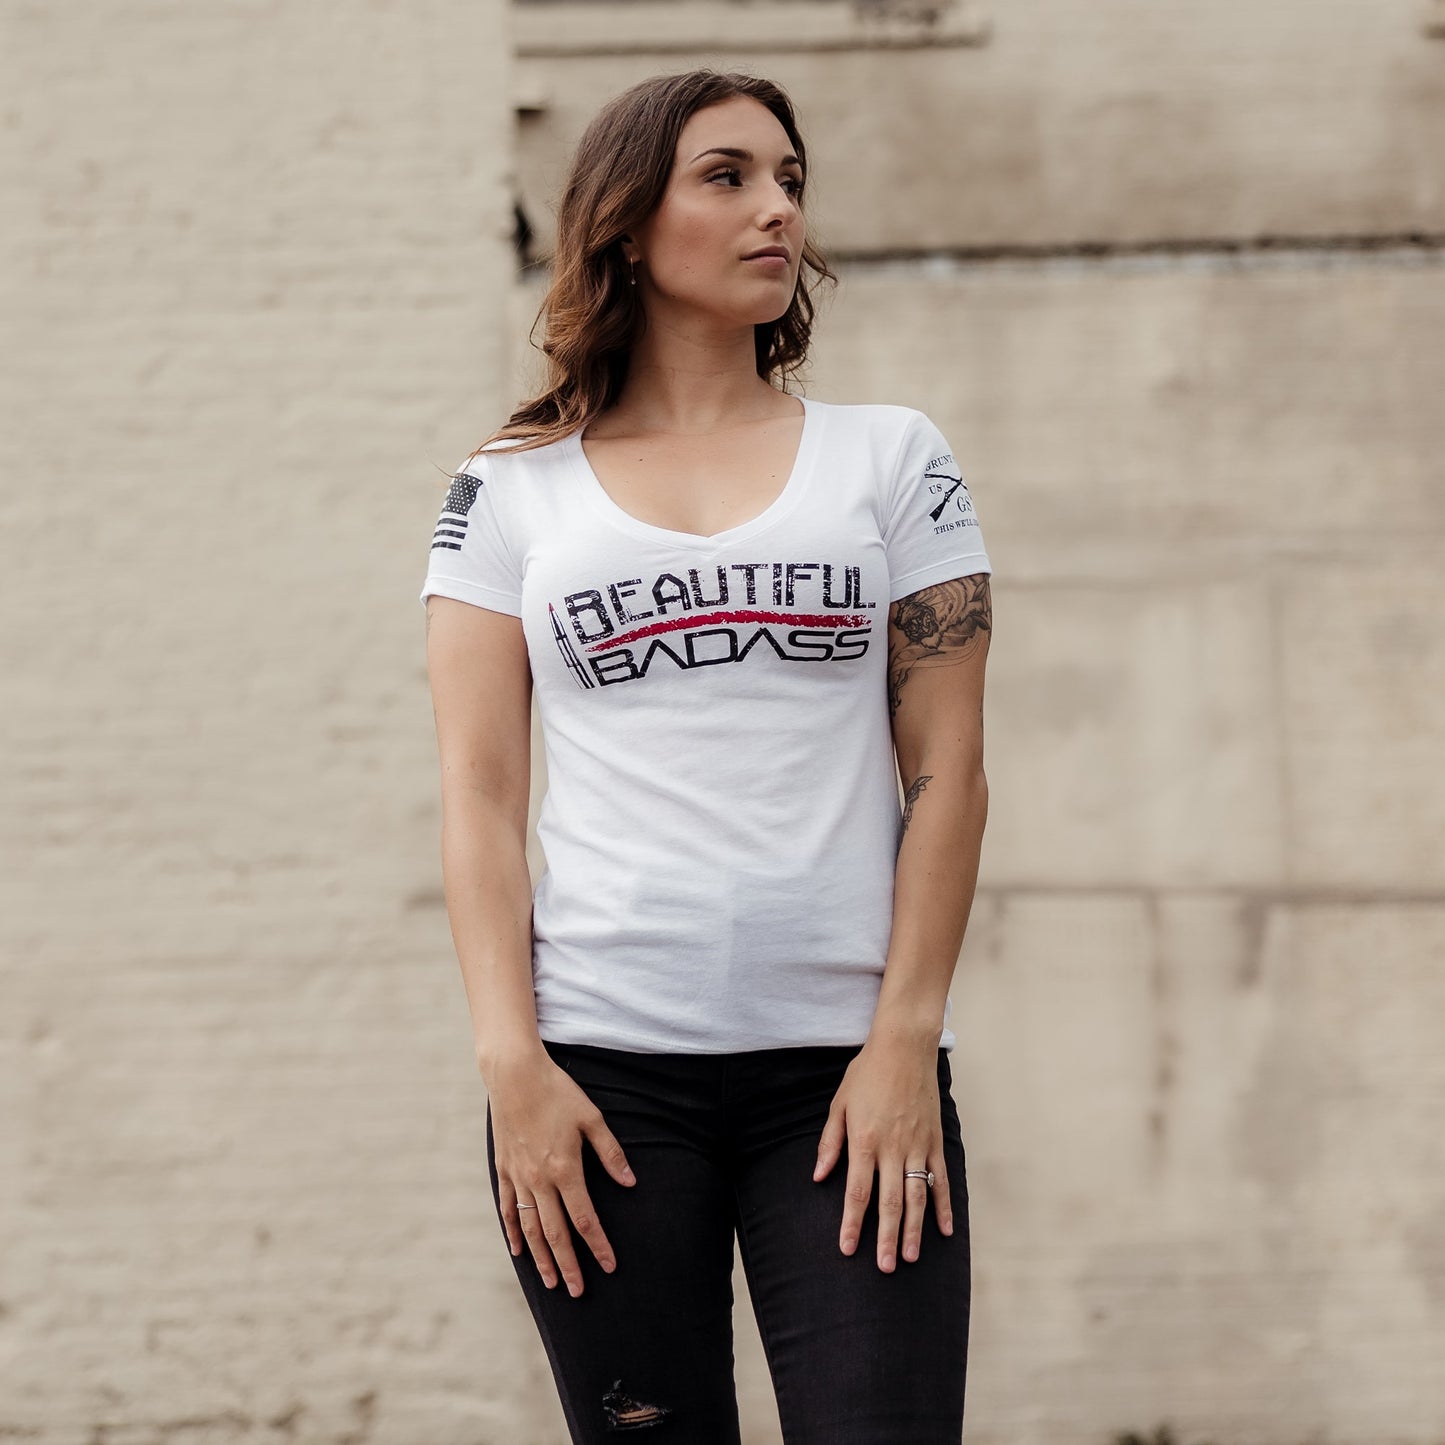 Women's V-Neck Tee Beautiful Badass | 2nd Amendment Shirts for Women 